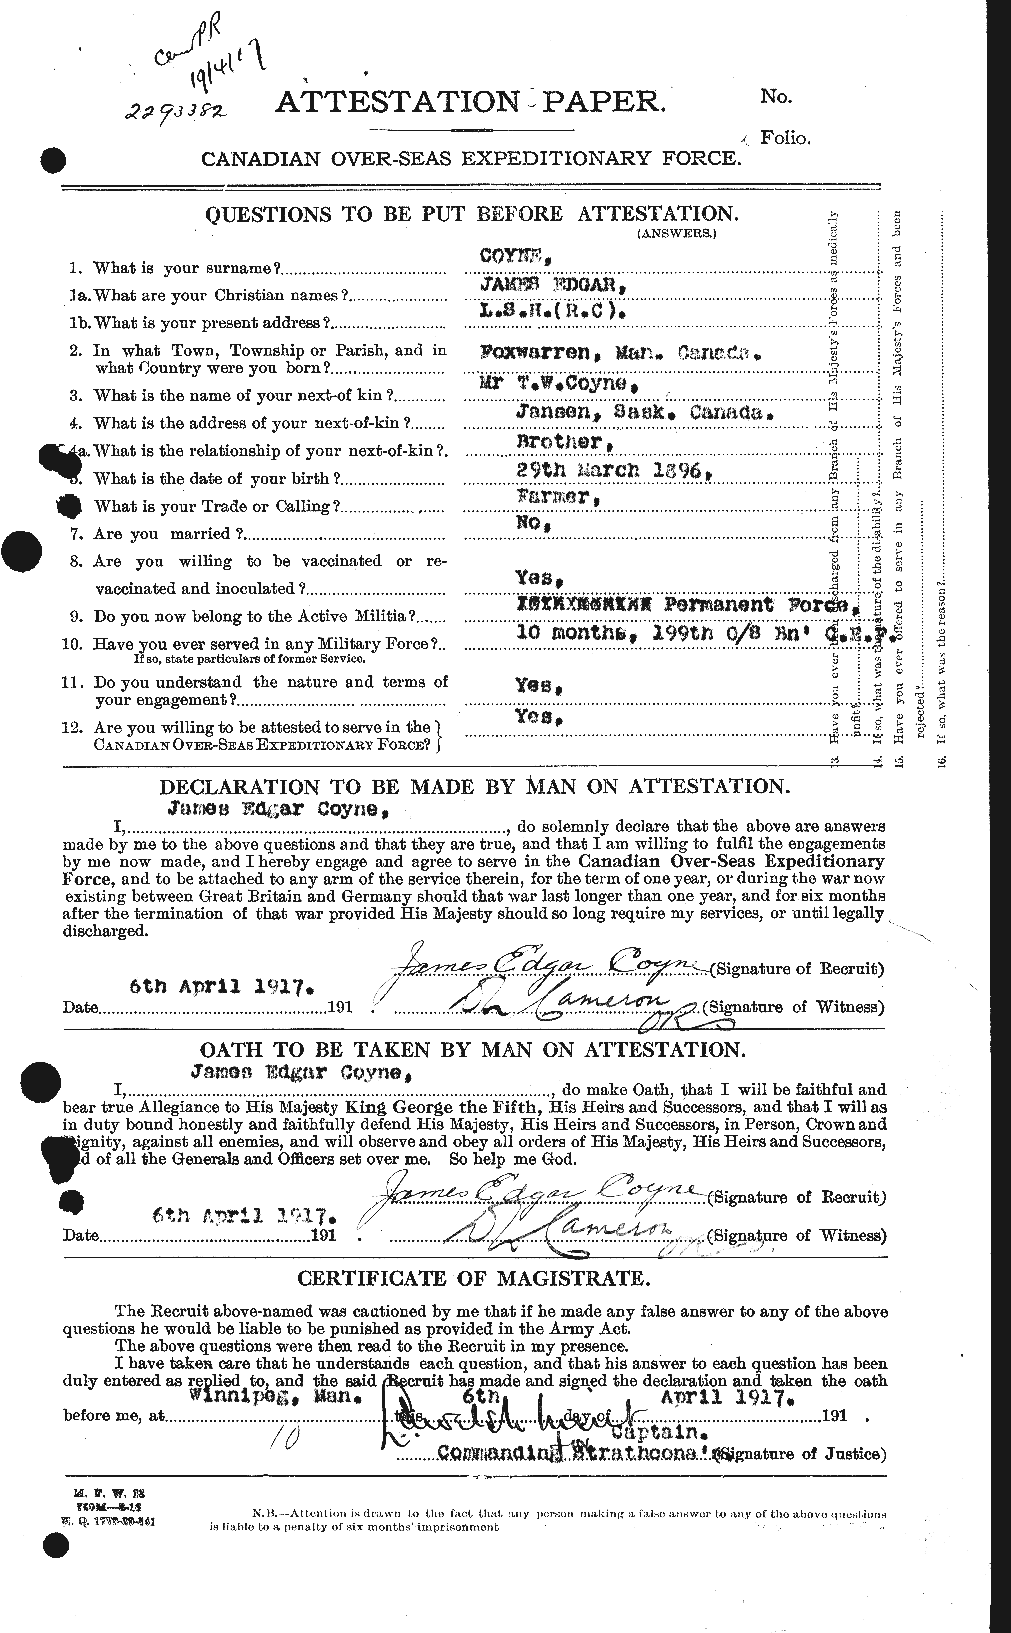 Dossiers du Personnel de la Première Guerre mondiale - CEC 062321a